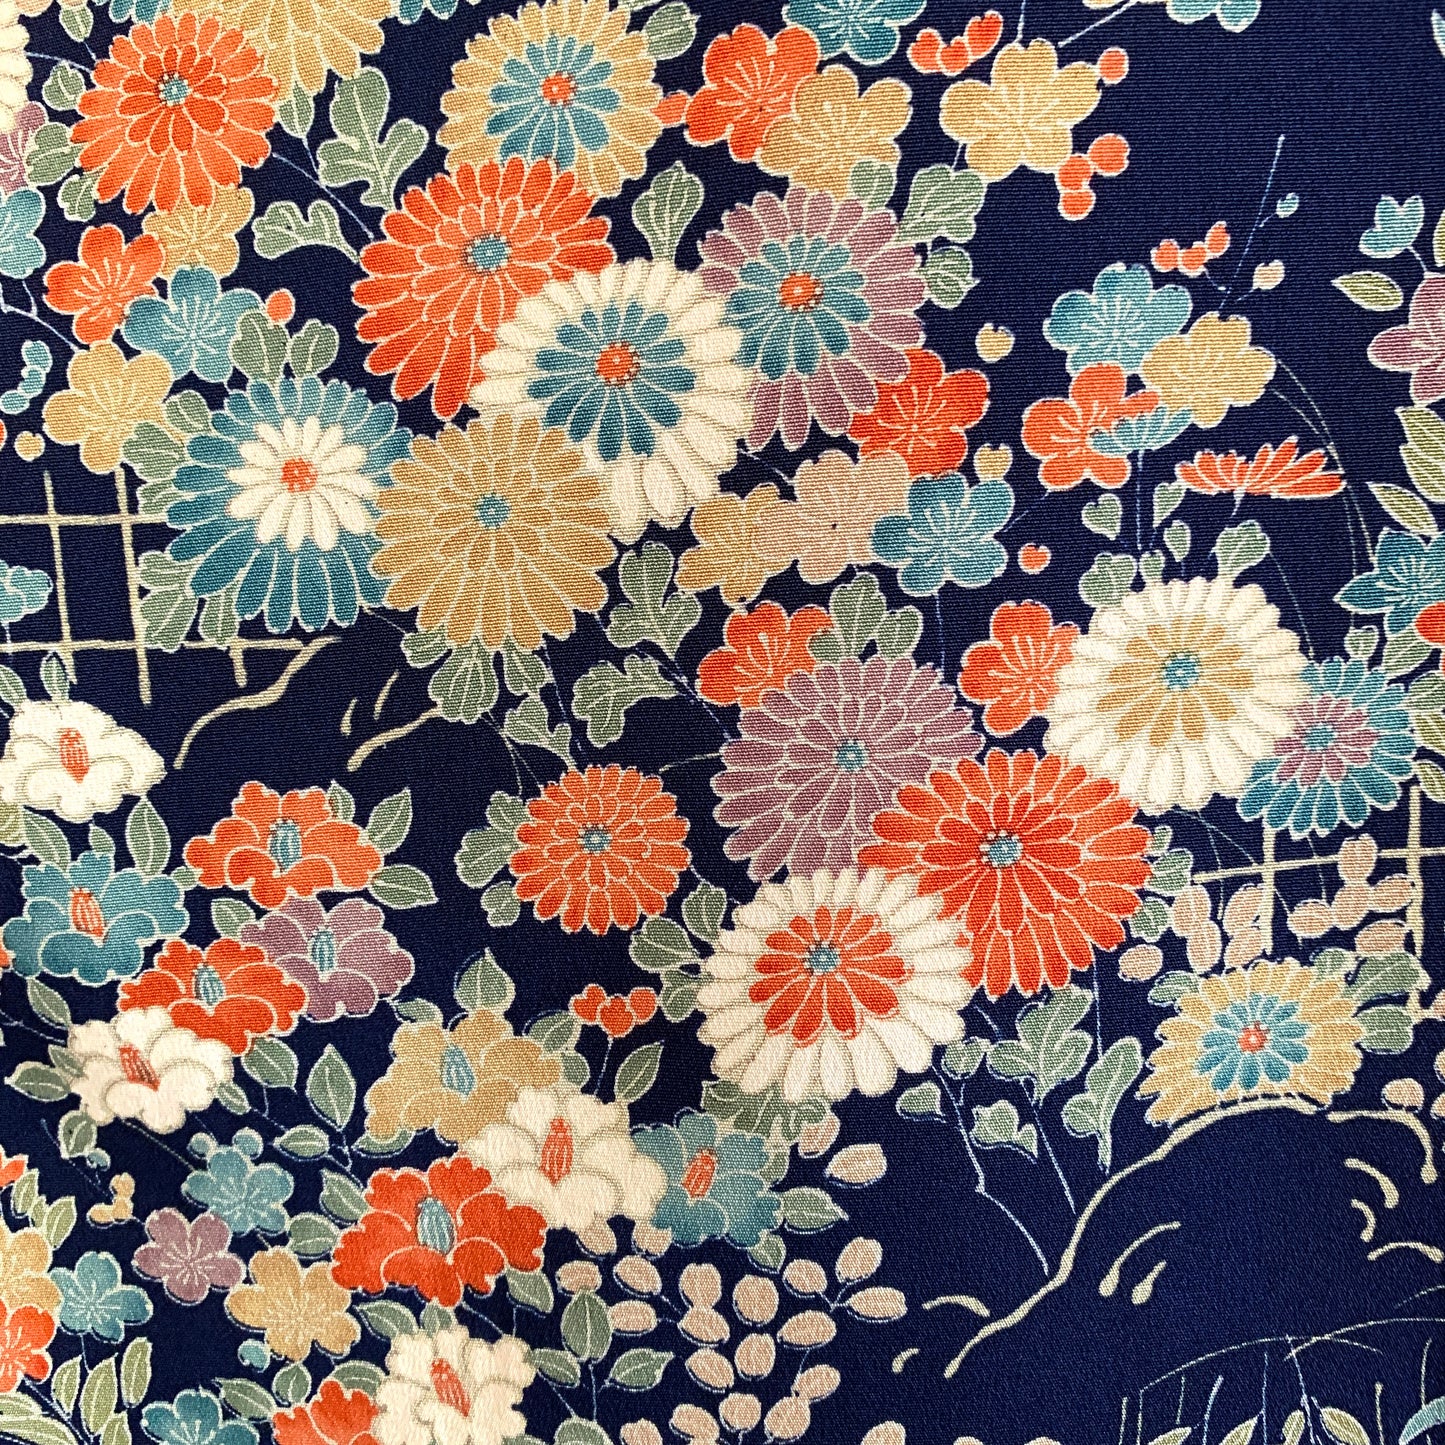 Kimono robe, komon 小紋, fabriquée à la main, recyclée #pre16